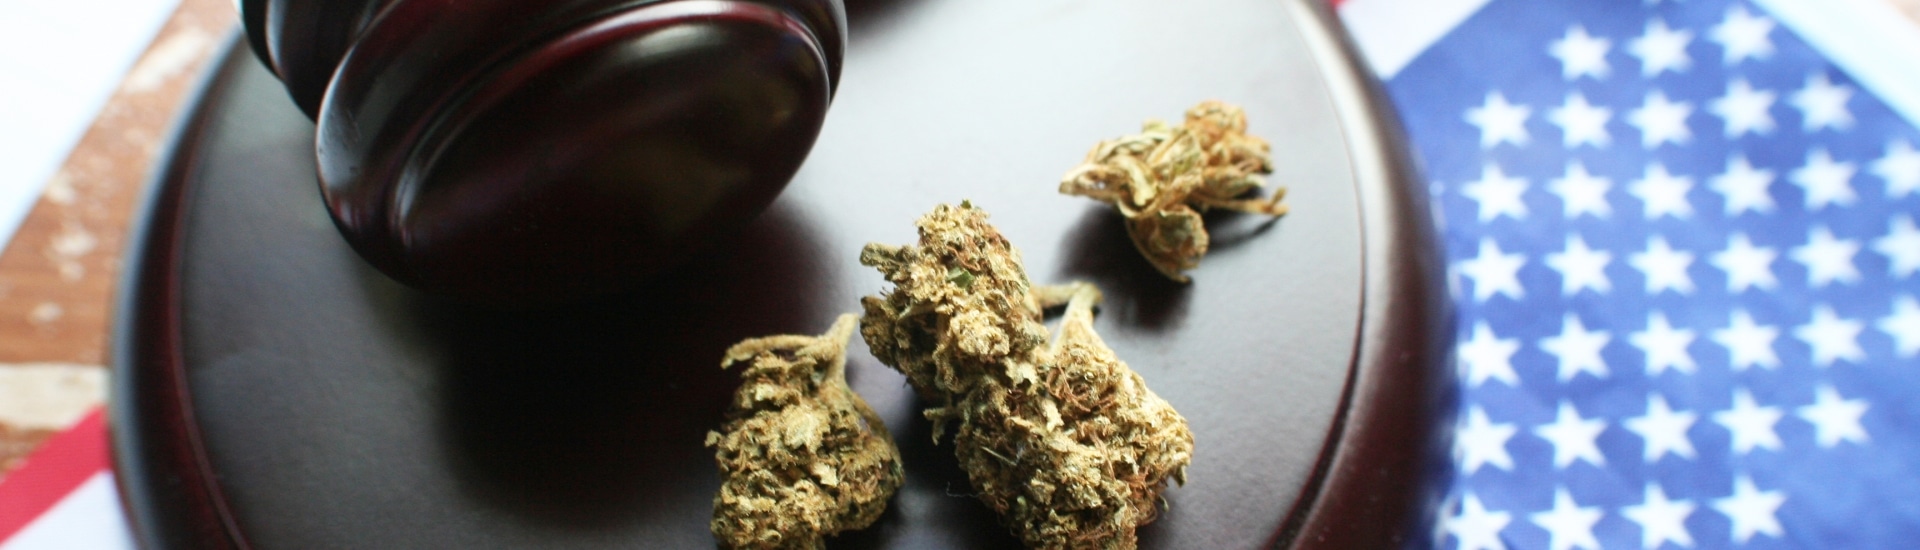 Aspectos legales que debe conocer si es un usuario del cannabis